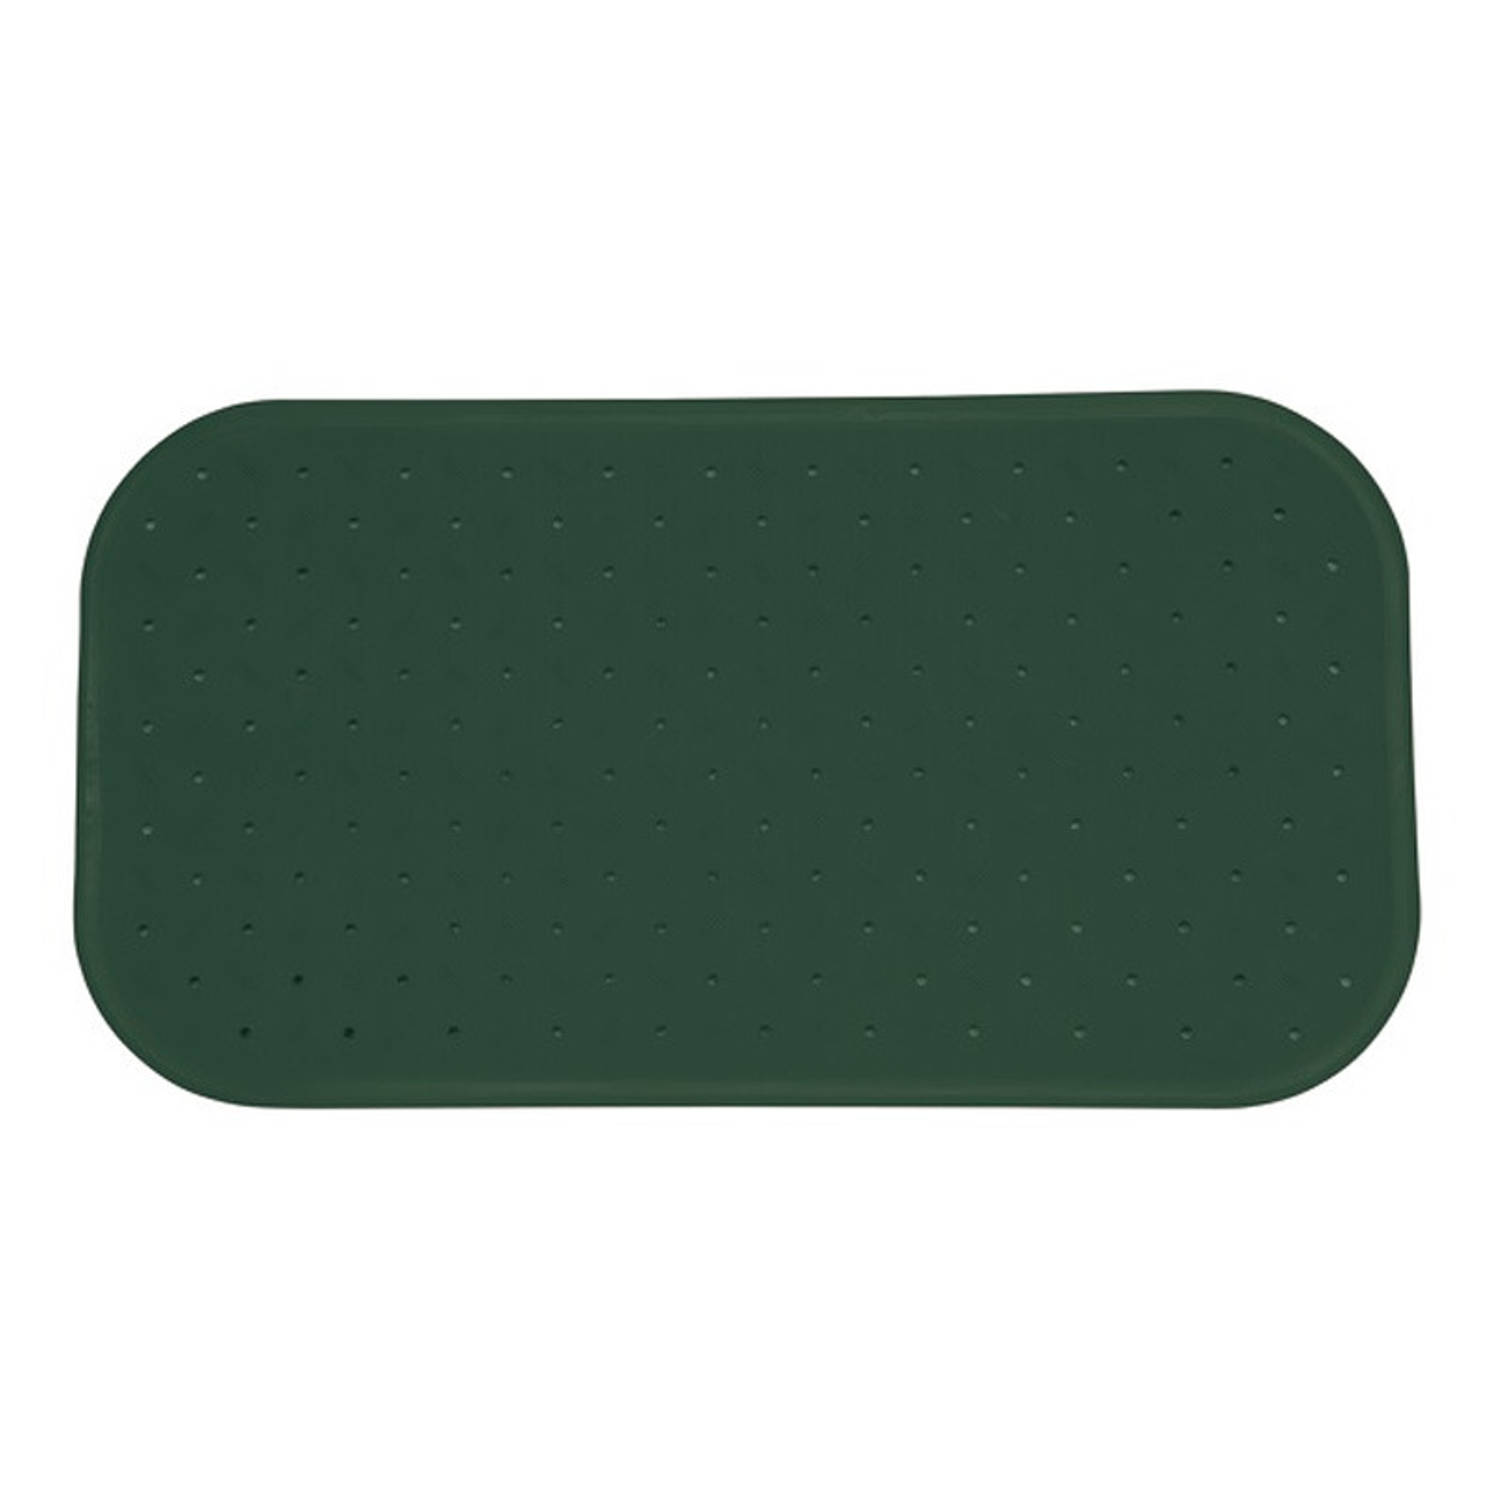 MSV Douche/bad anti-slip mat badkamer - rubber - groen - 36 x 97 cm - met zuignappen - extra lang formaat